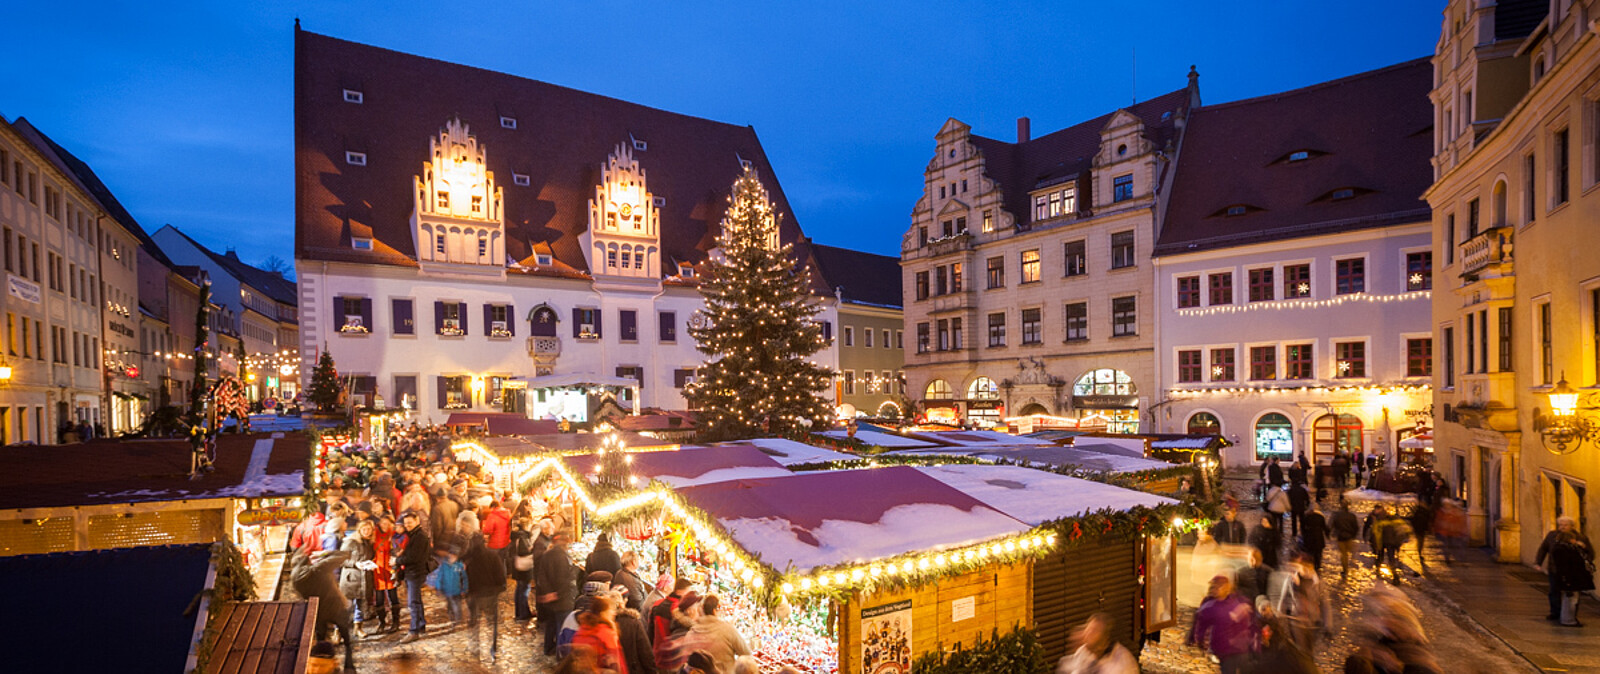 Meißner Weihnachtsmarkt unterhalb der Albrechtsburg